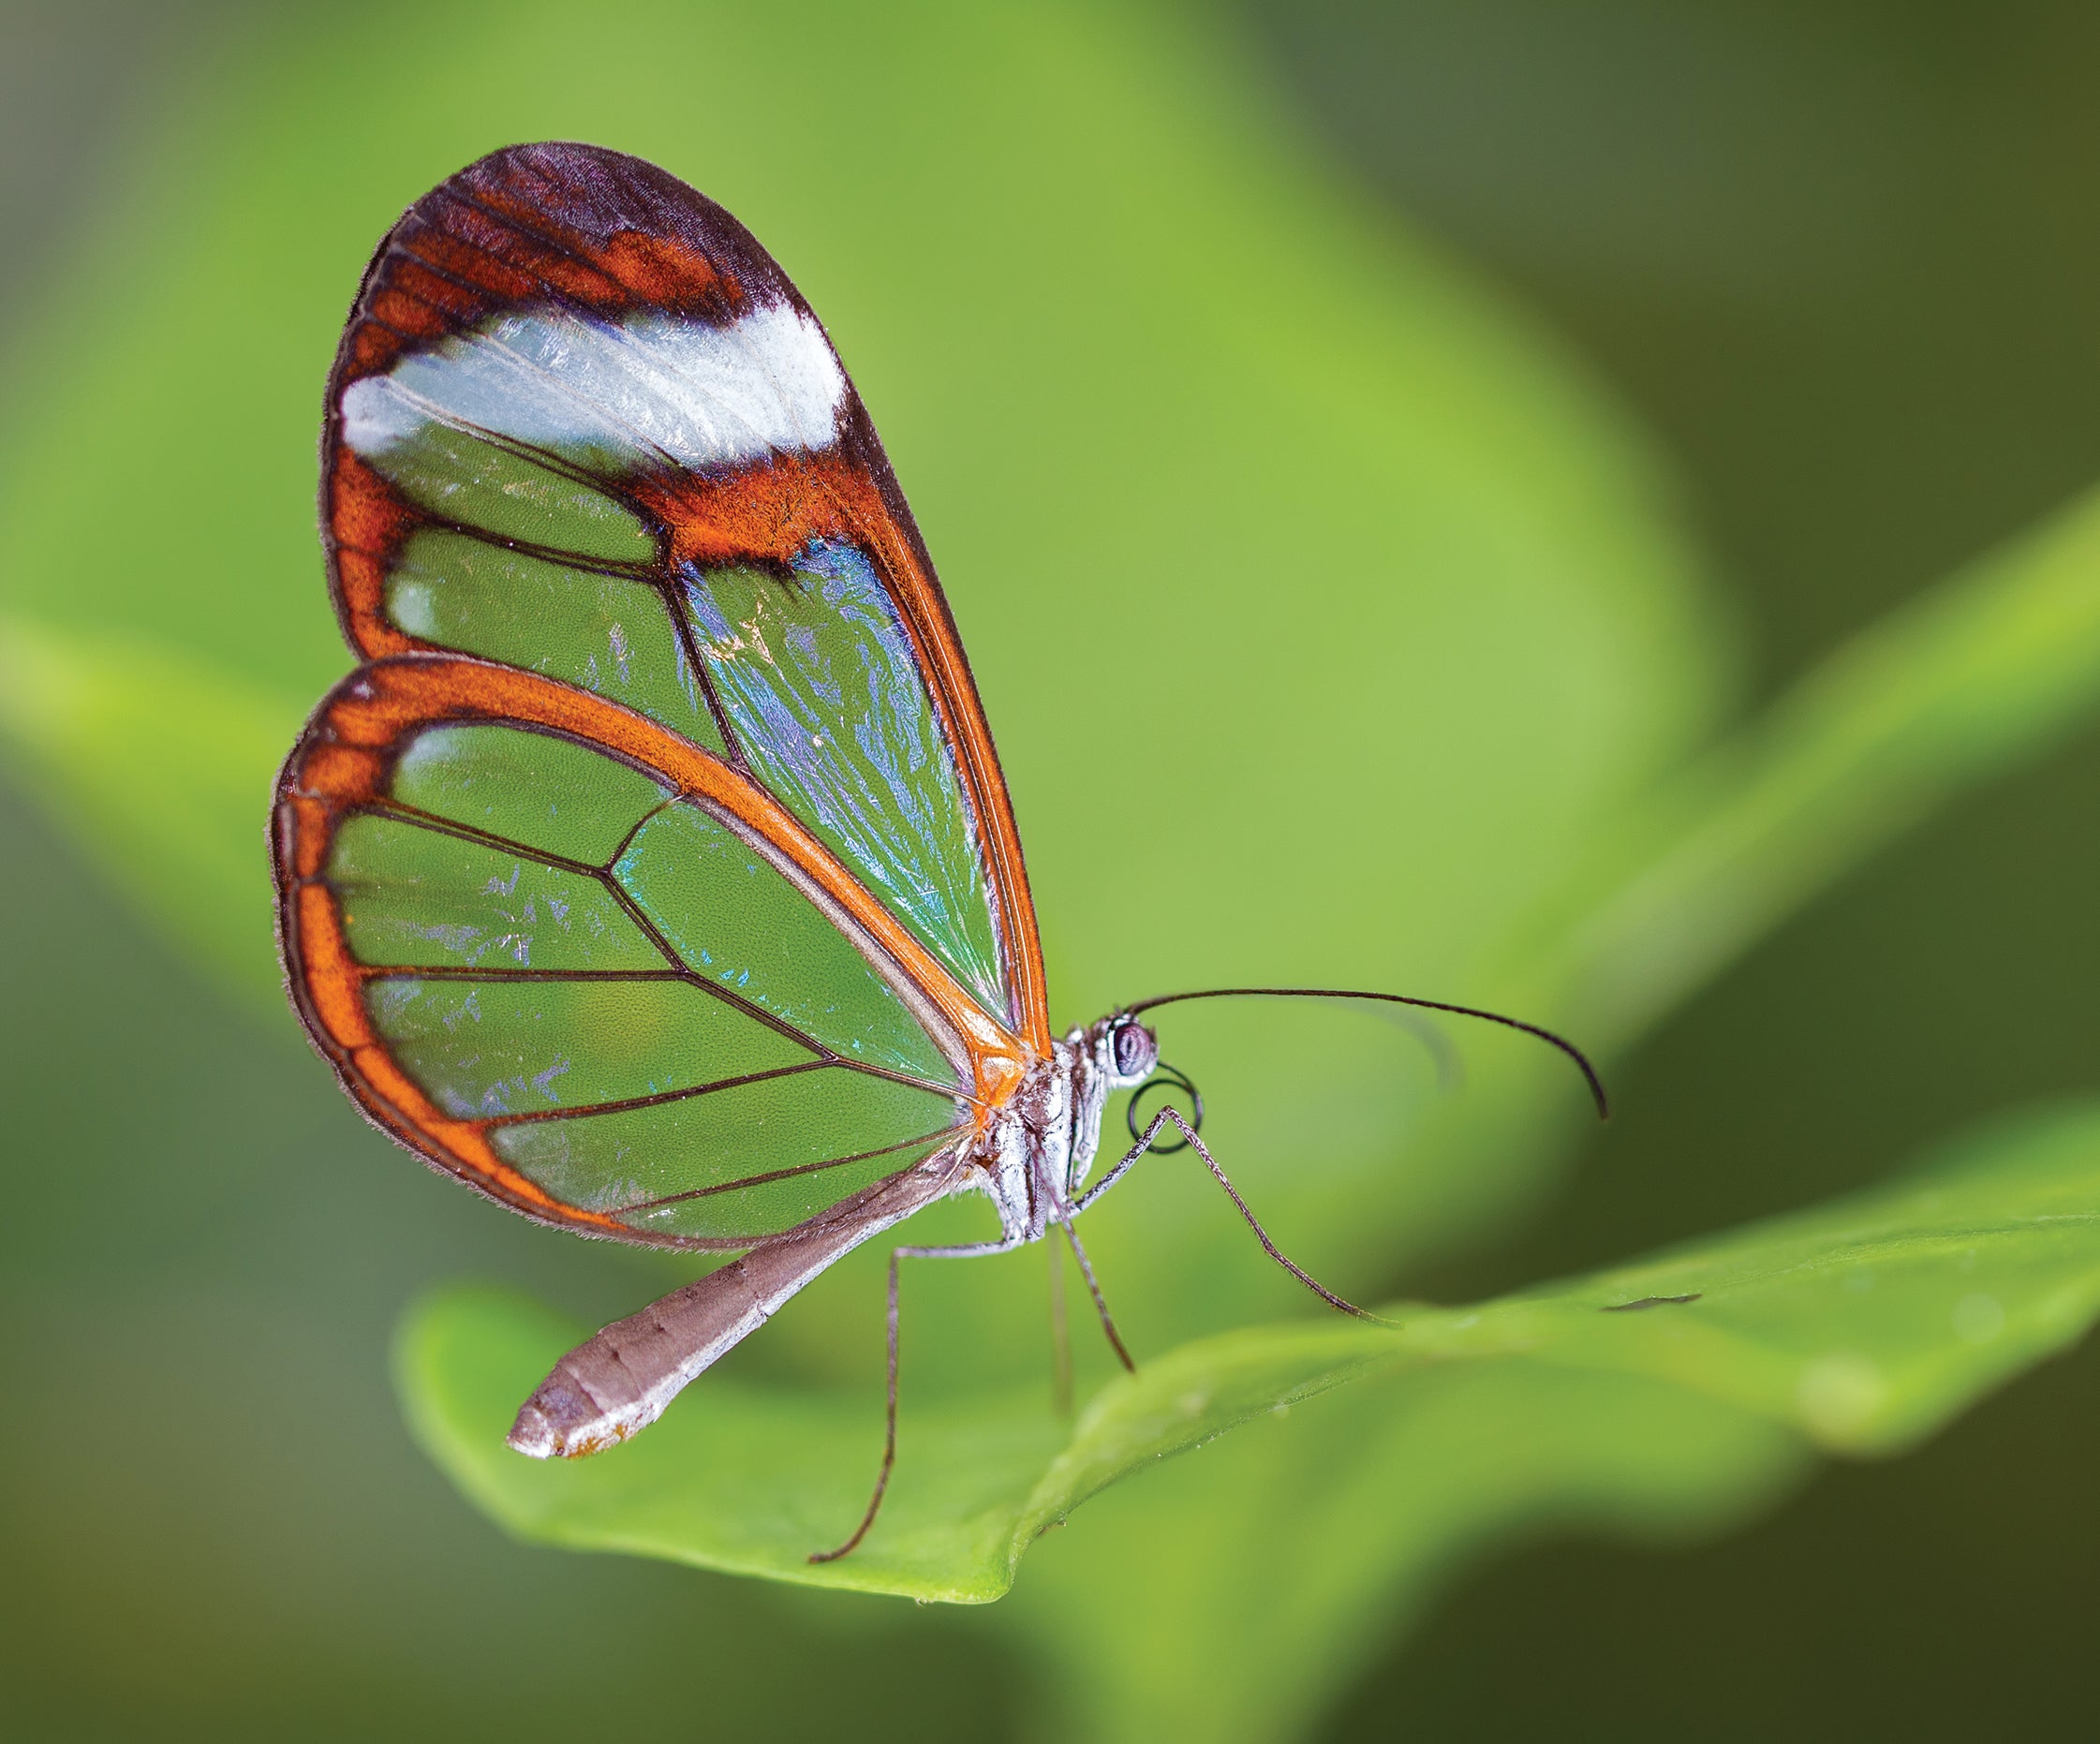 Glasswing butterfly on green leaf